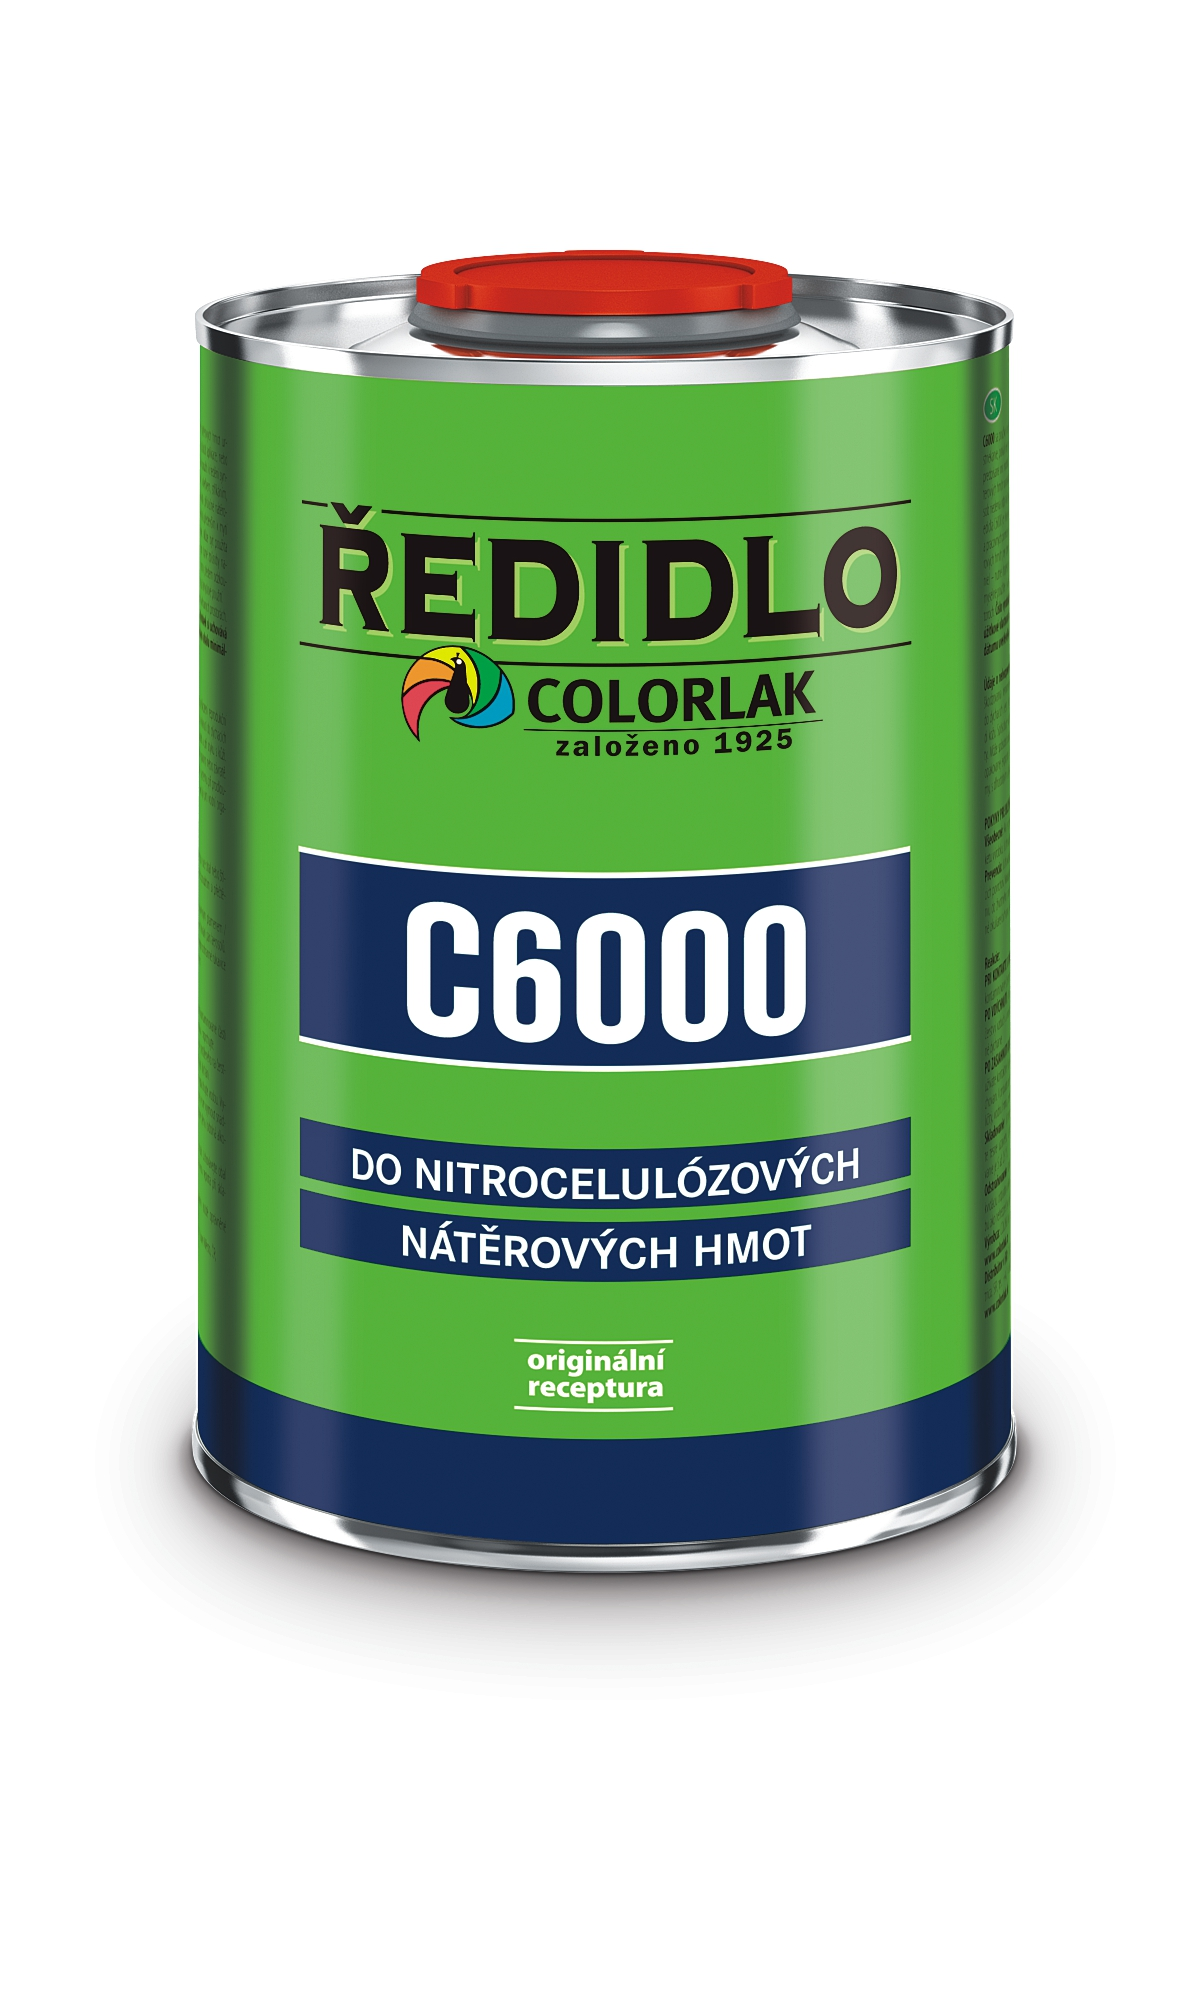 Colorlak Ředidlo C6000 2l